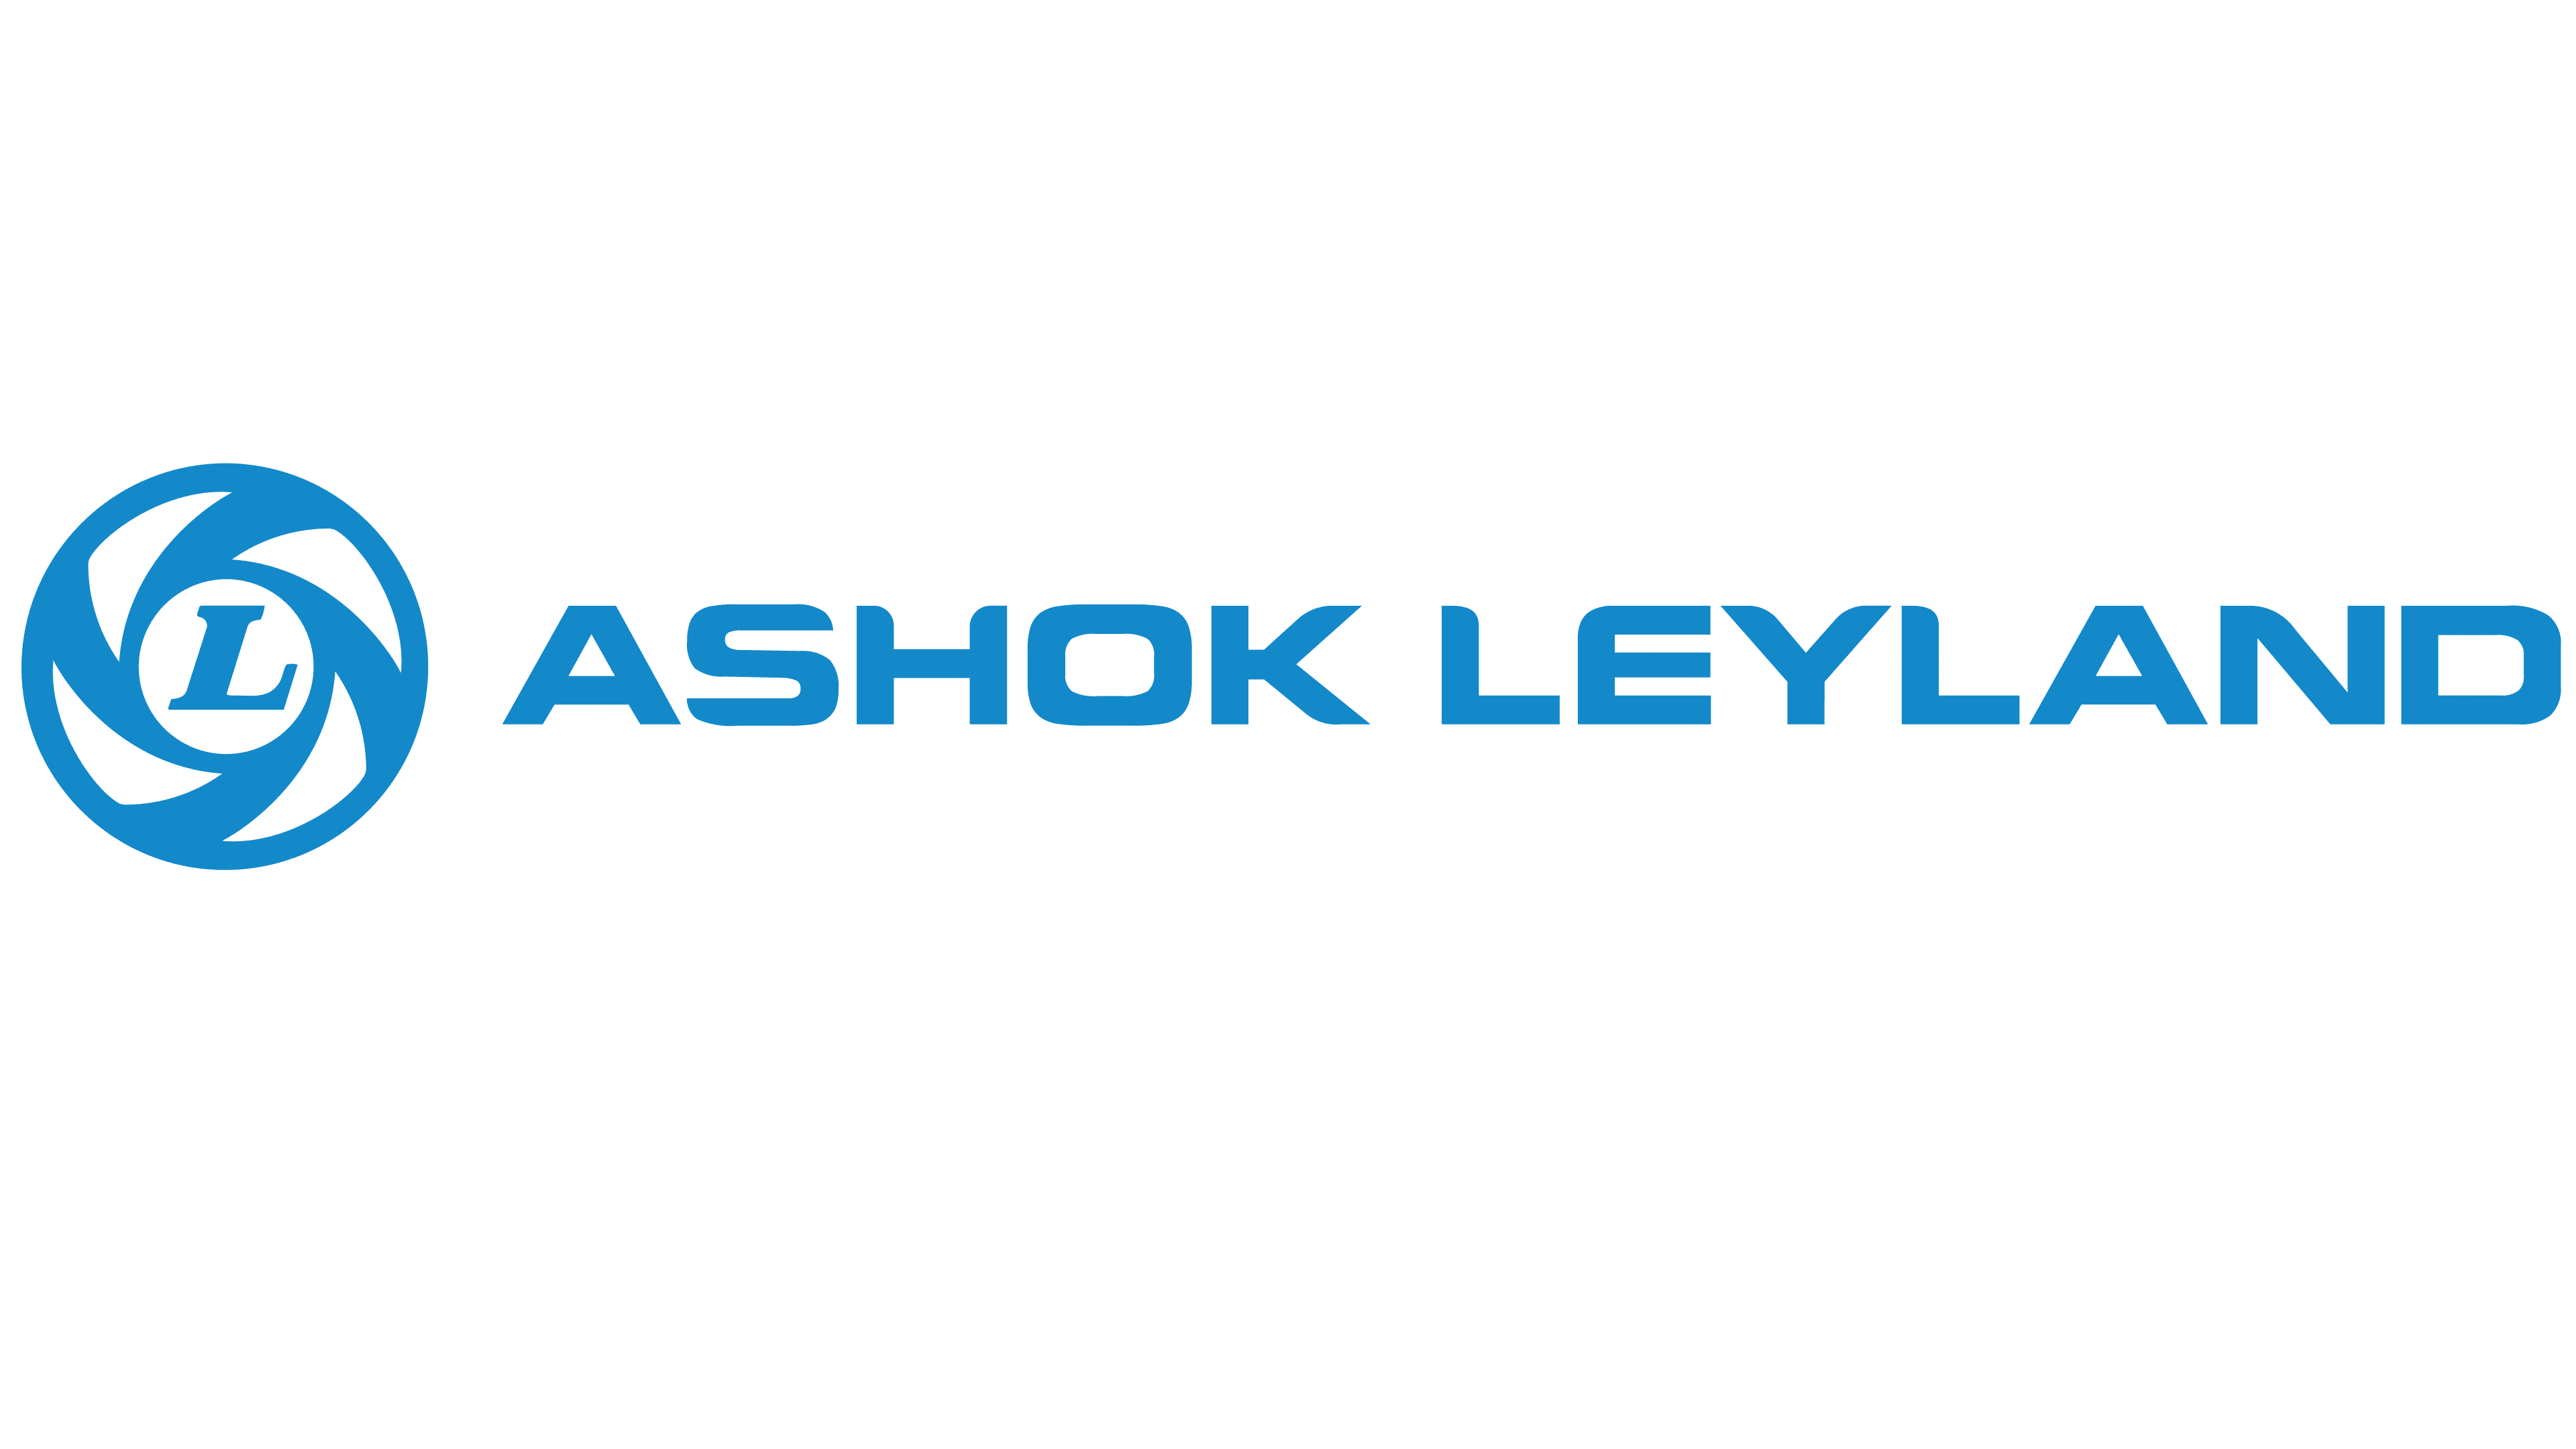 Ashok-Leyland-Logo